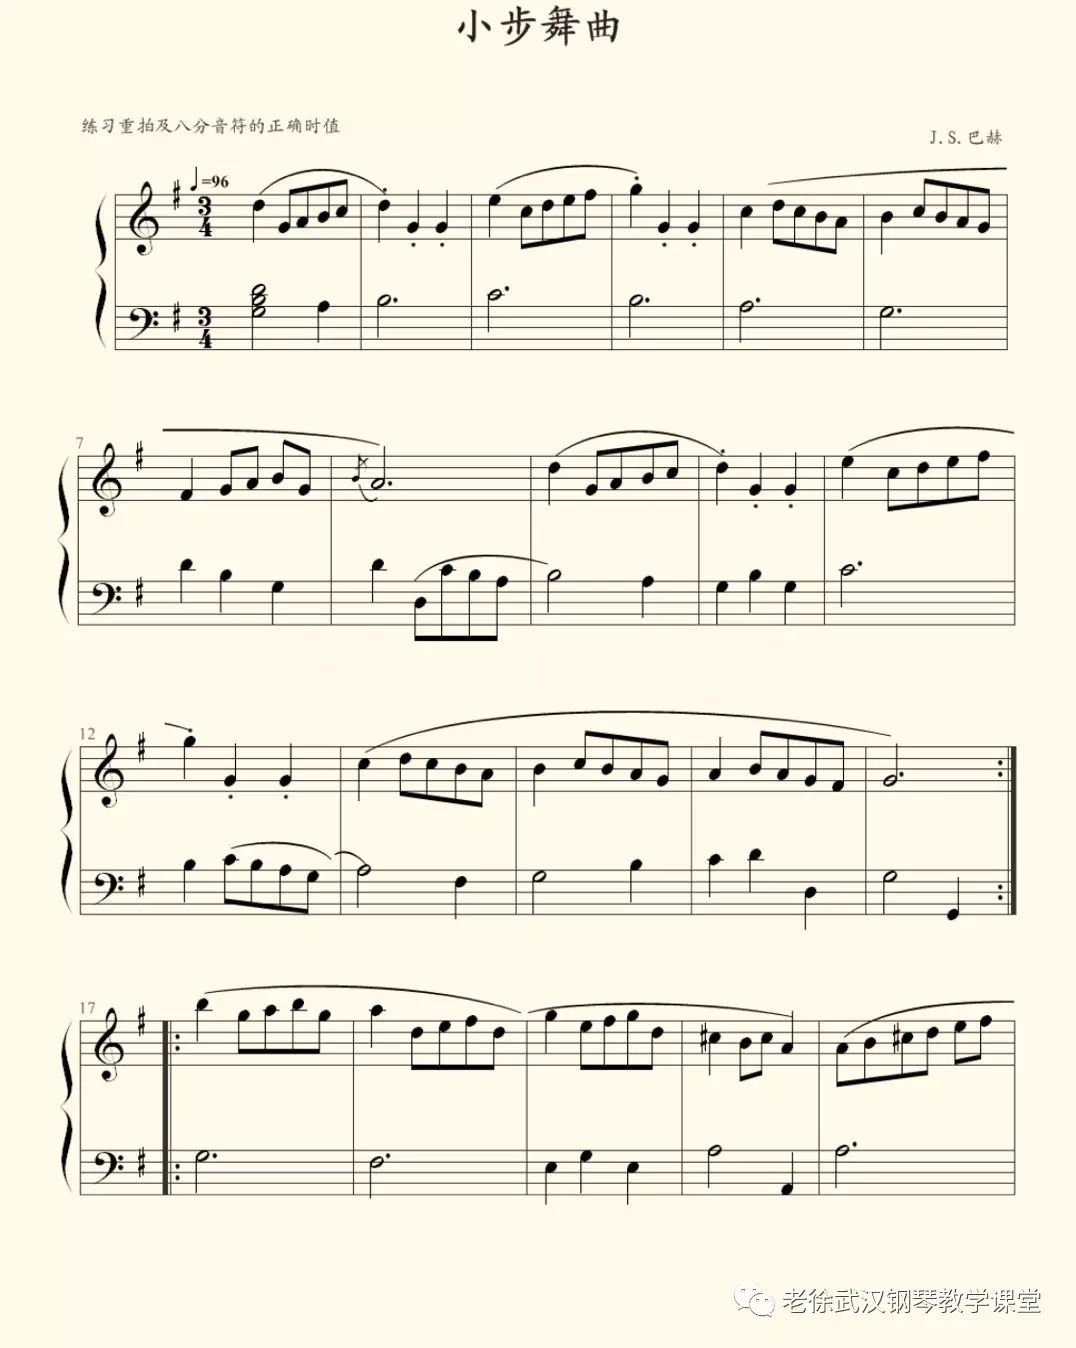 【每日美听】巴赫初级钢琴曲集(1):小步舞曲(附音频,视频,琴谱外加